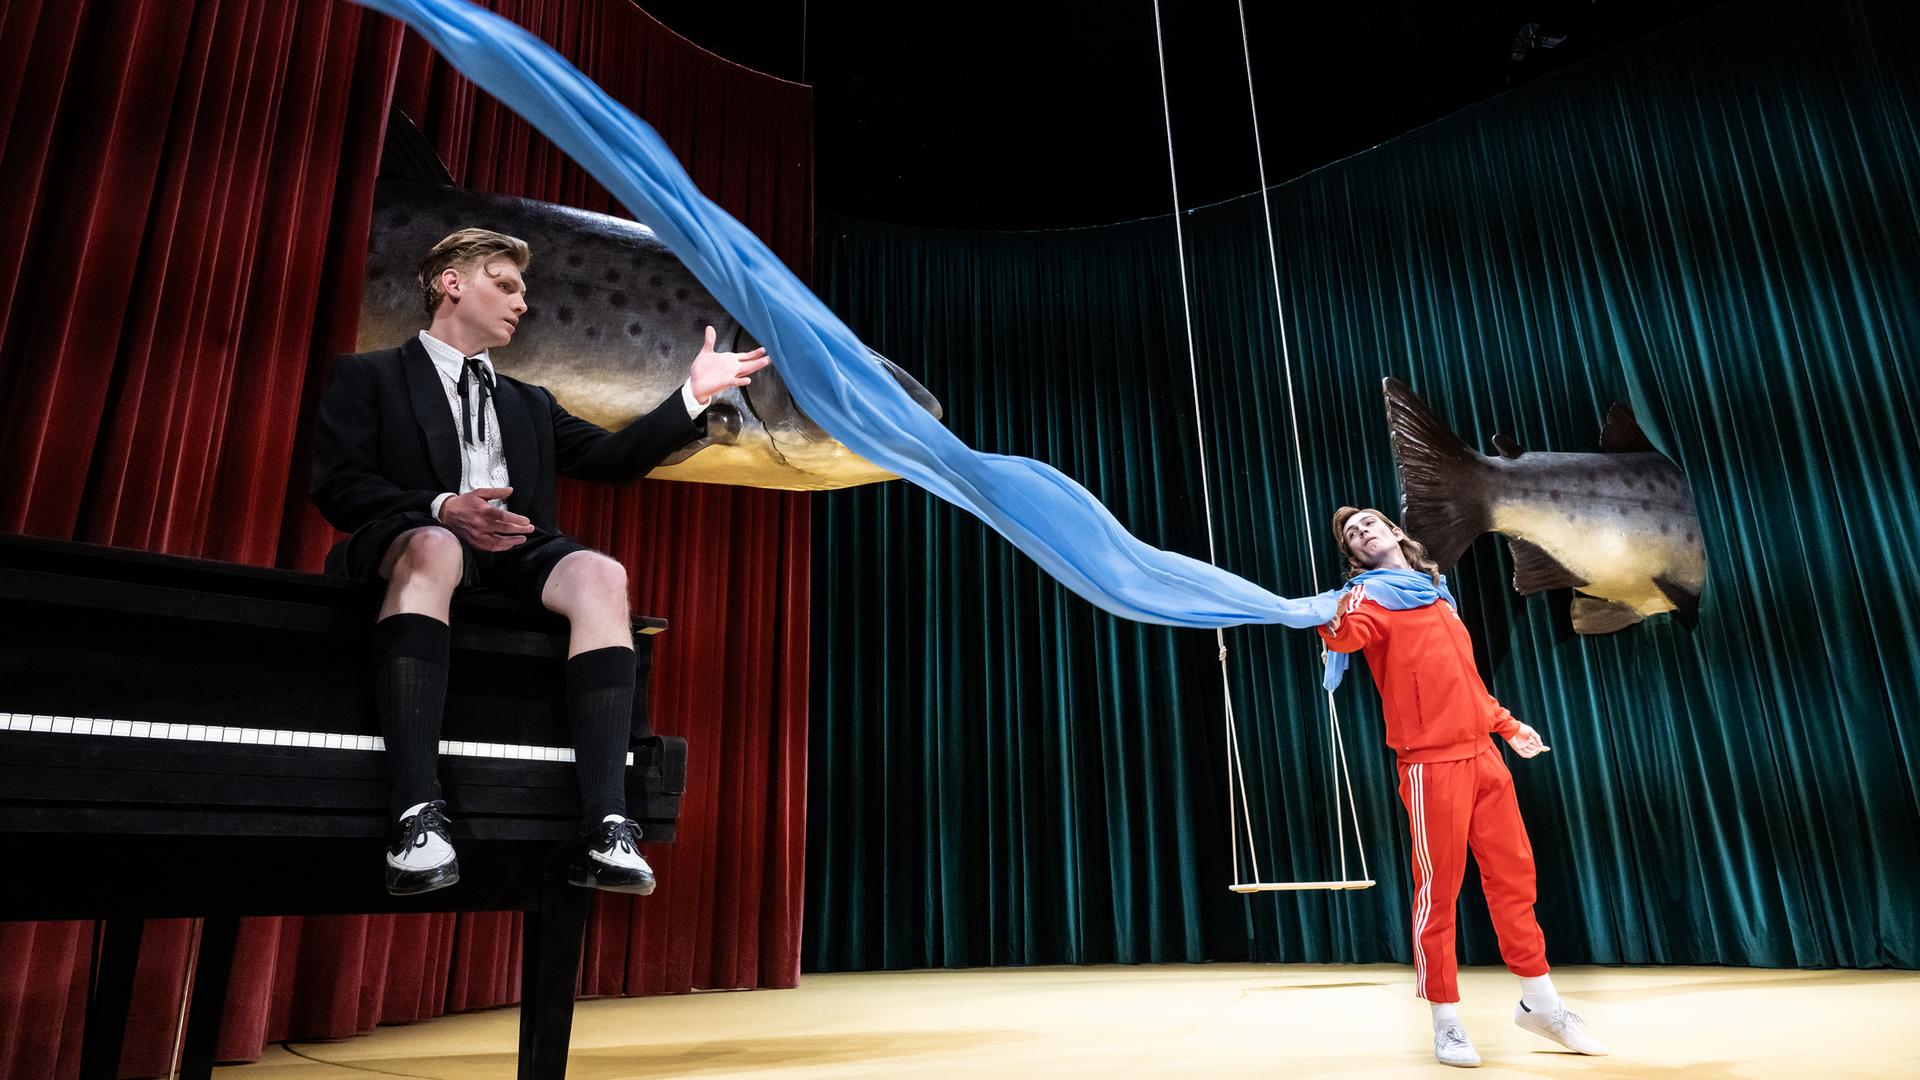 Zwischen den Schauspielern Johannes Nussbaum und Vincent zur Linden flattert ein blaues Tusch quer über die Bühne. Im Hintergrund schweben zwei riesige Fische.